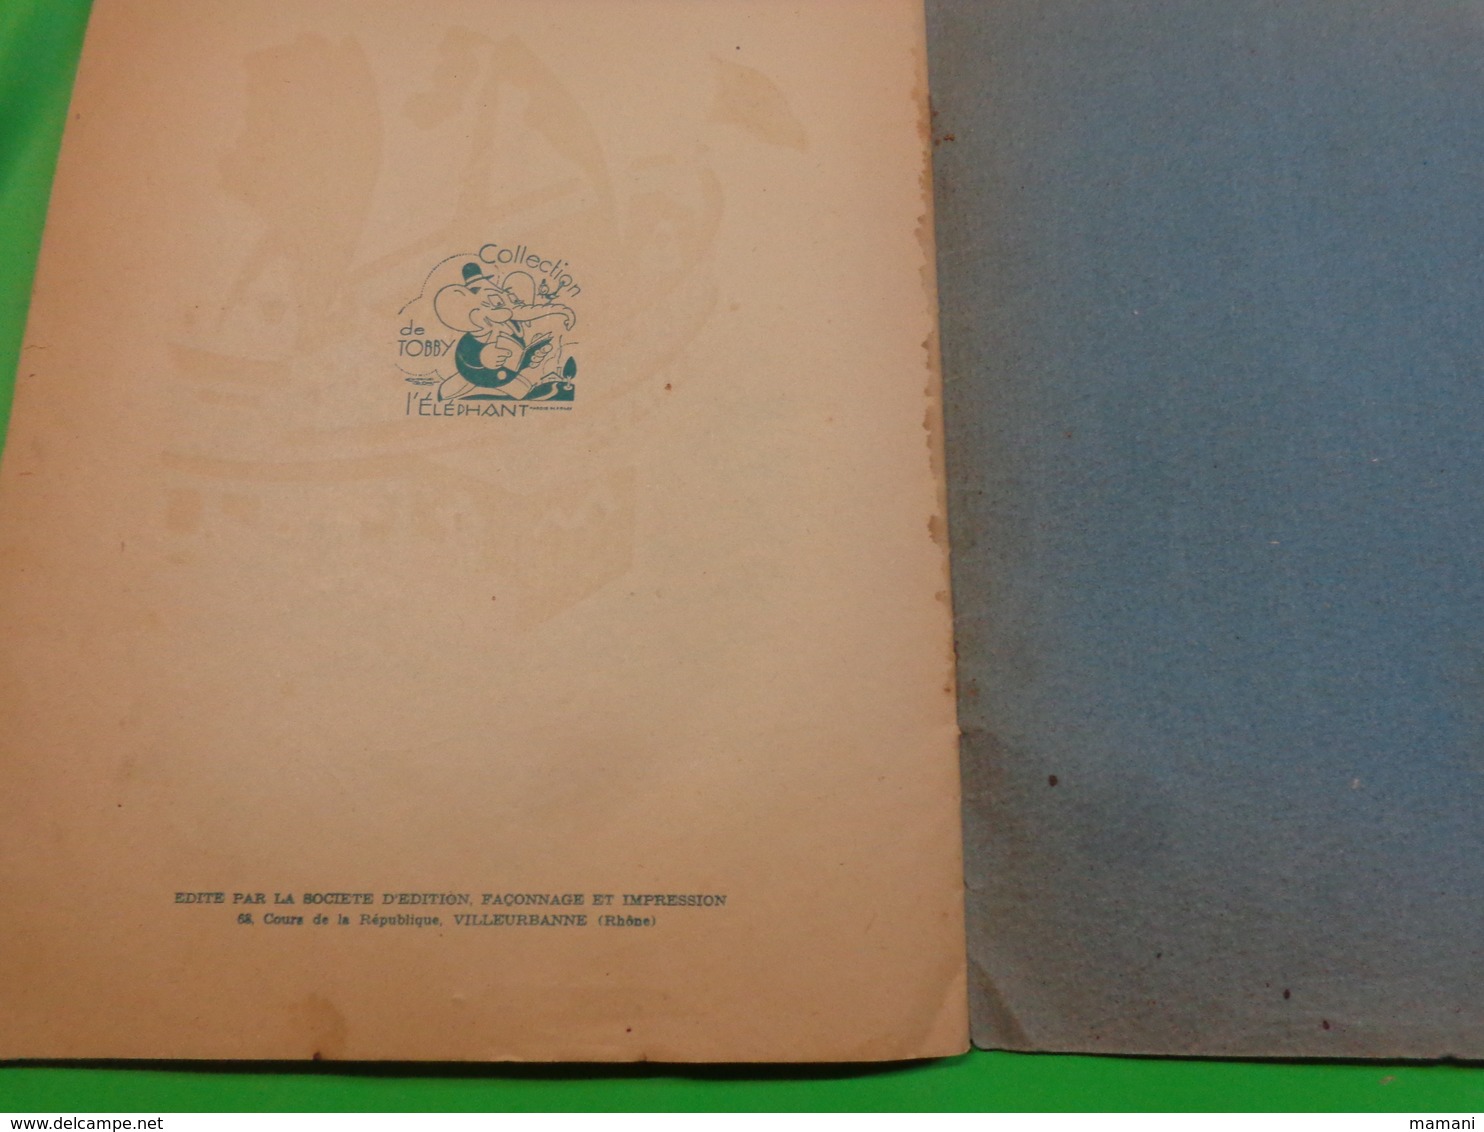 GULLIVER AU PAYS DES GEANTS de SWIFT, illustrations d'Emmanuel COCARD Collection TOBBY L'Eléphant de 1954? (Numéro d'obj